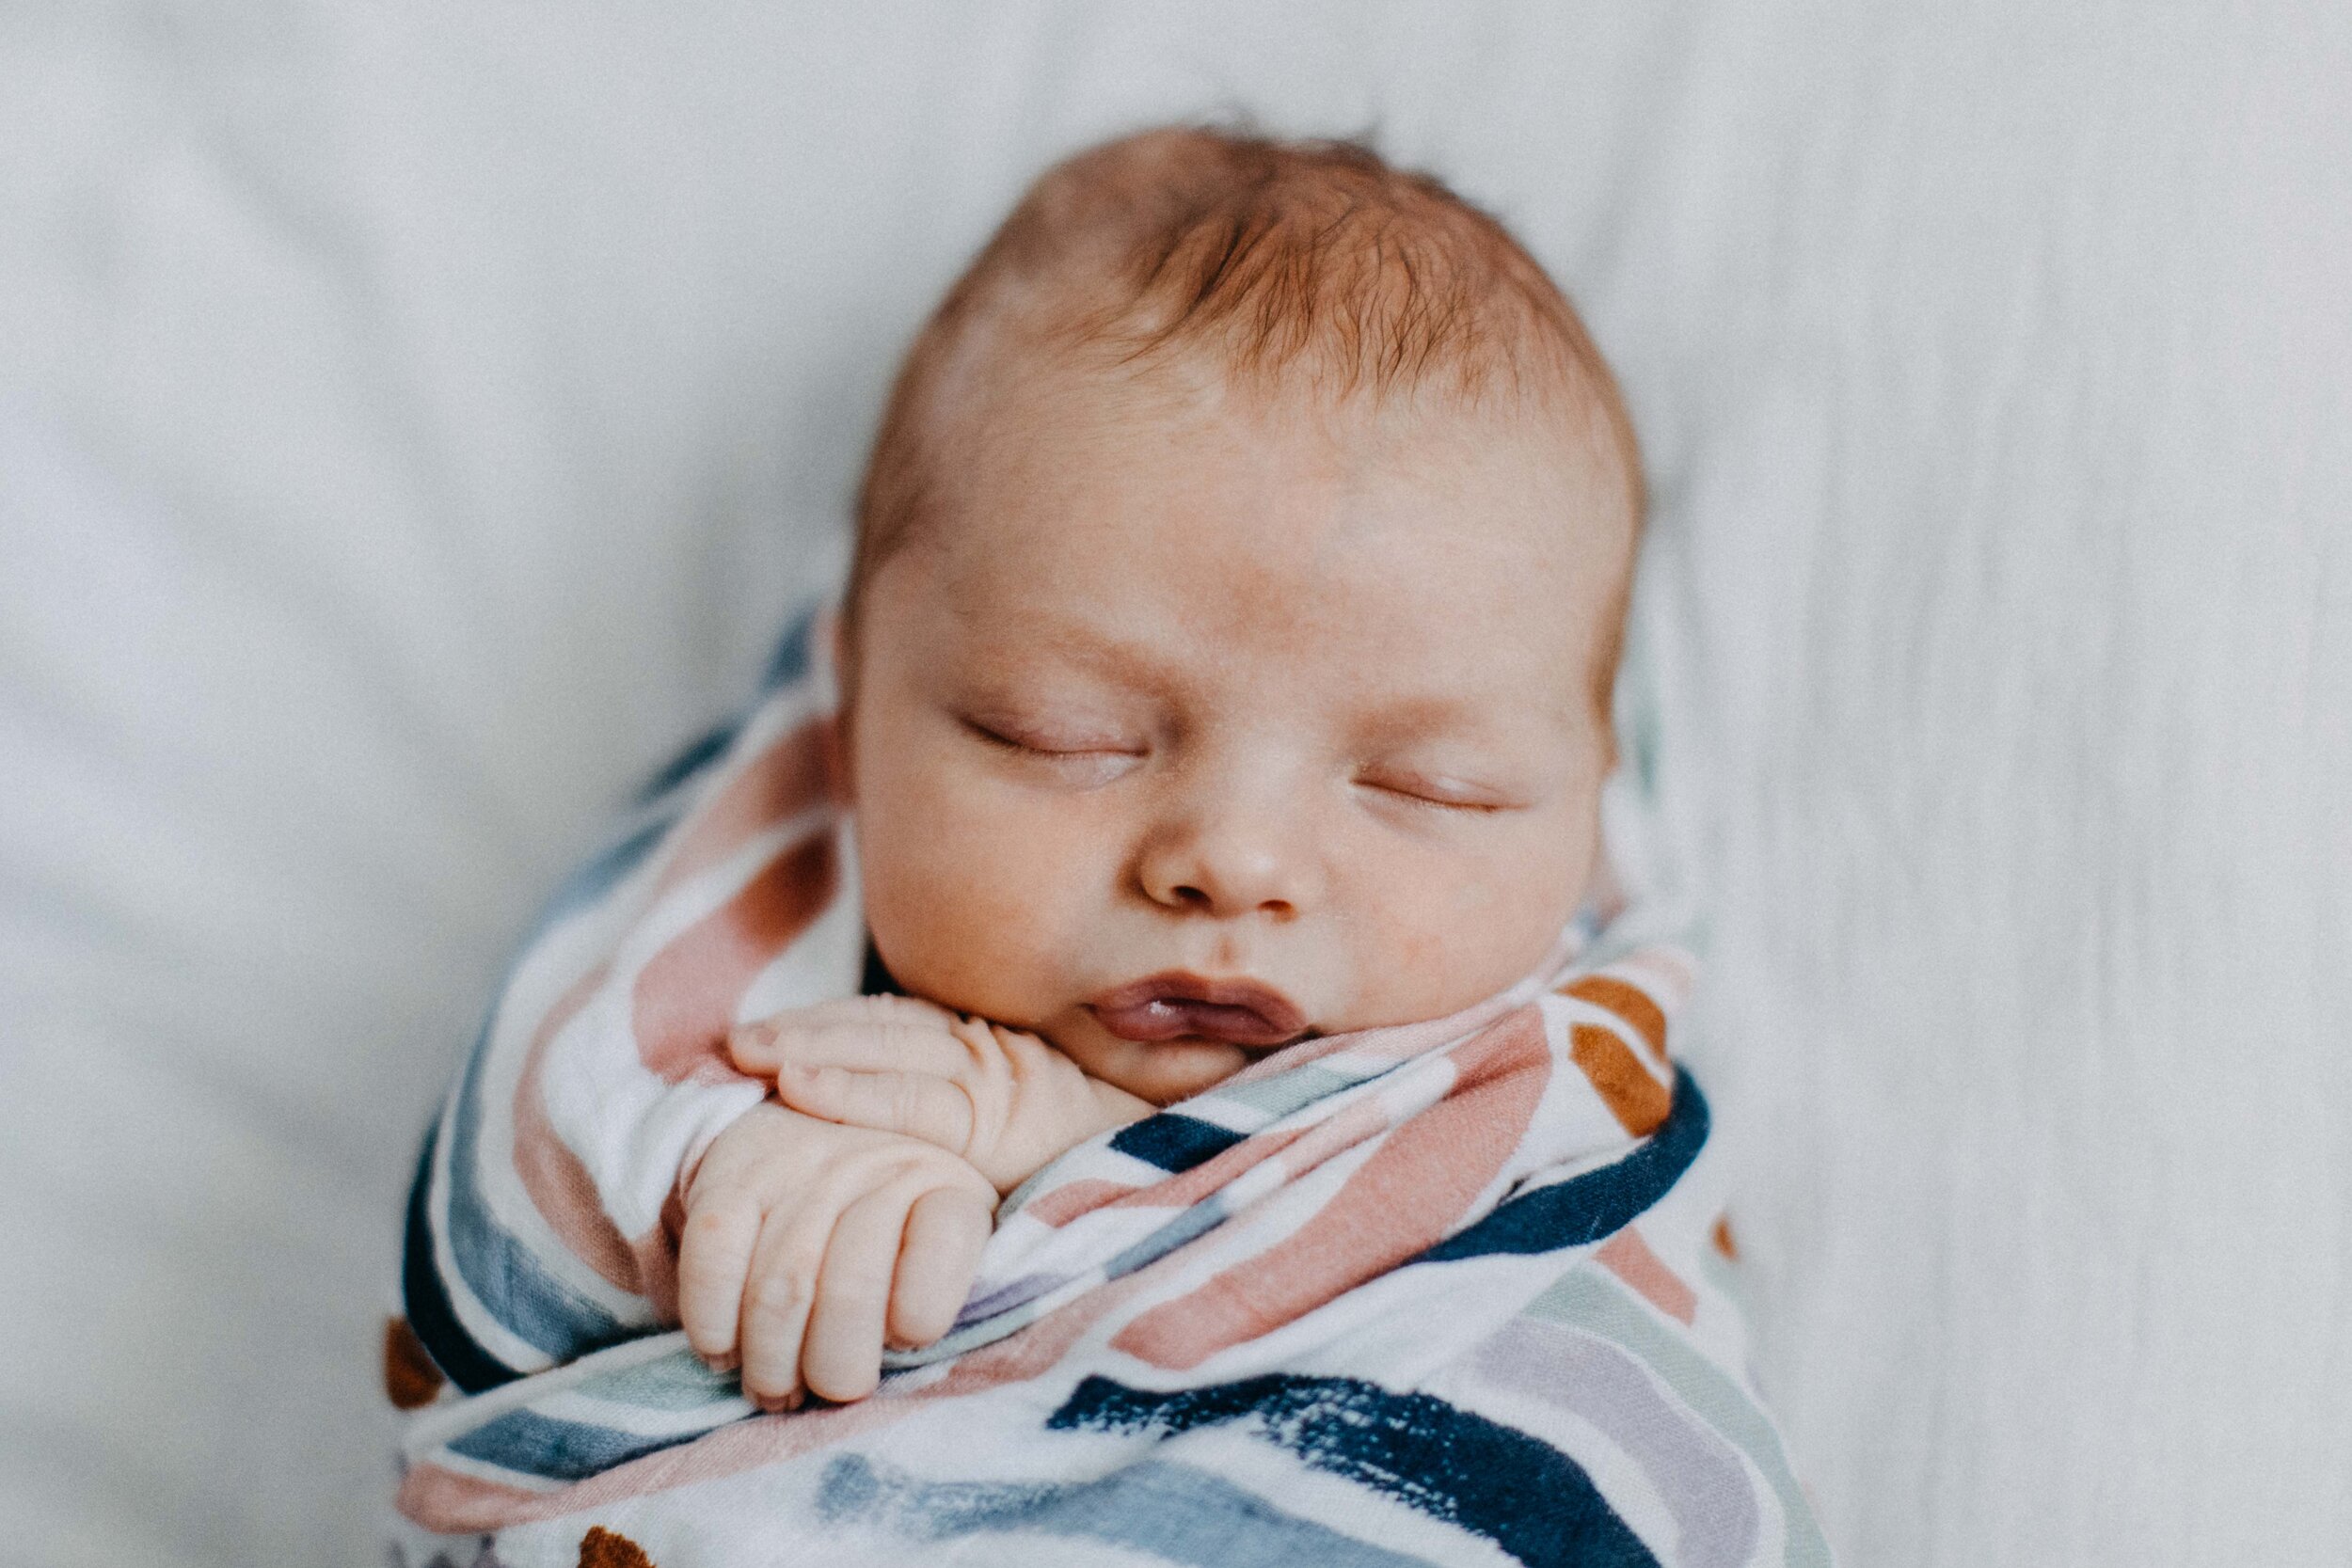 camden-newborn-photographer-lucas-brown-52.jpg